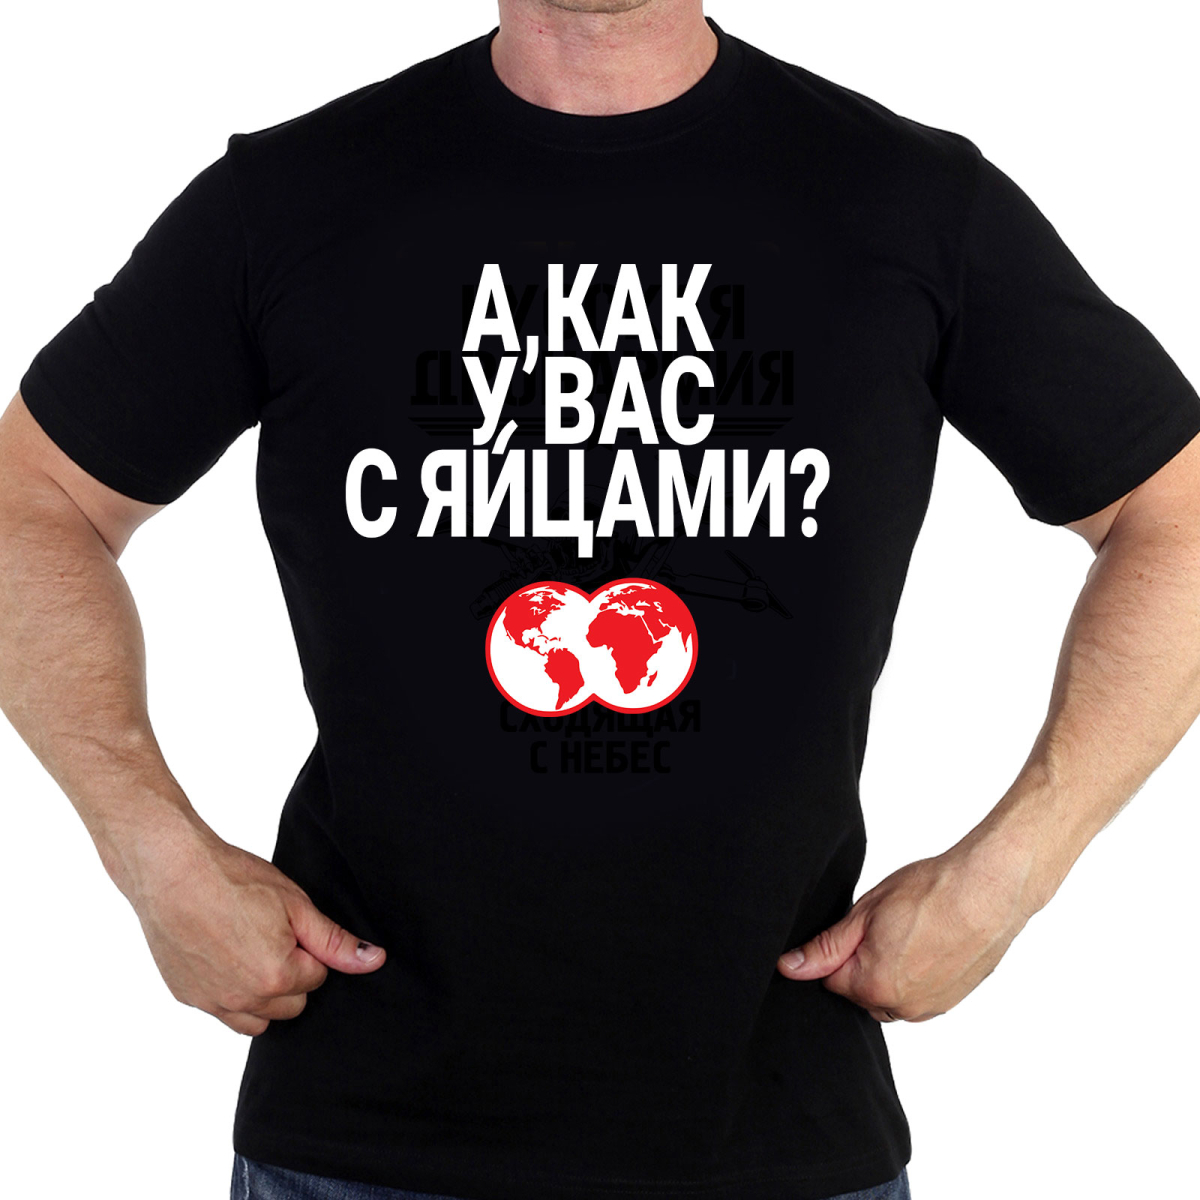 Черная футболка "А, как у, вас с яйцами?" с крылатой фразой Путина 